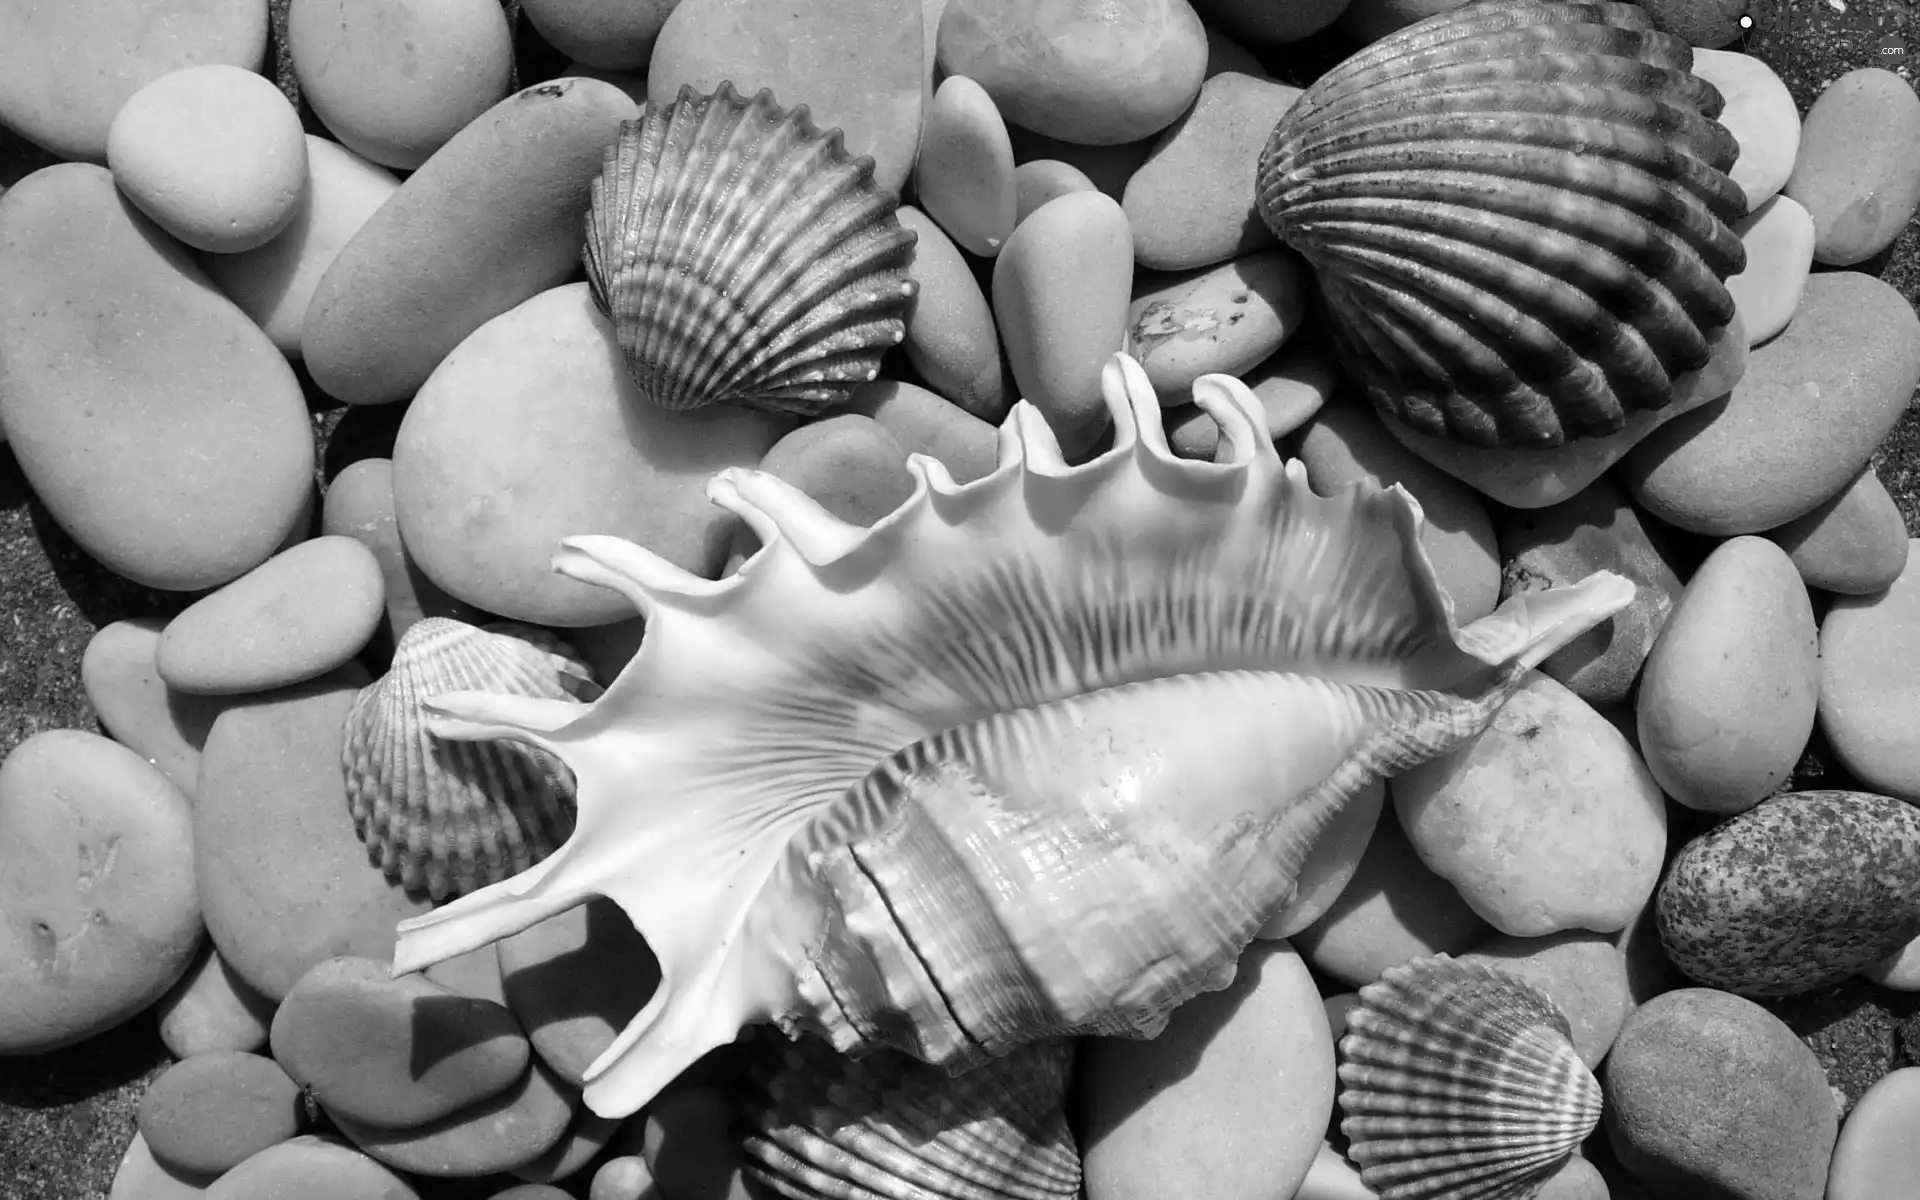 Shells, Stones